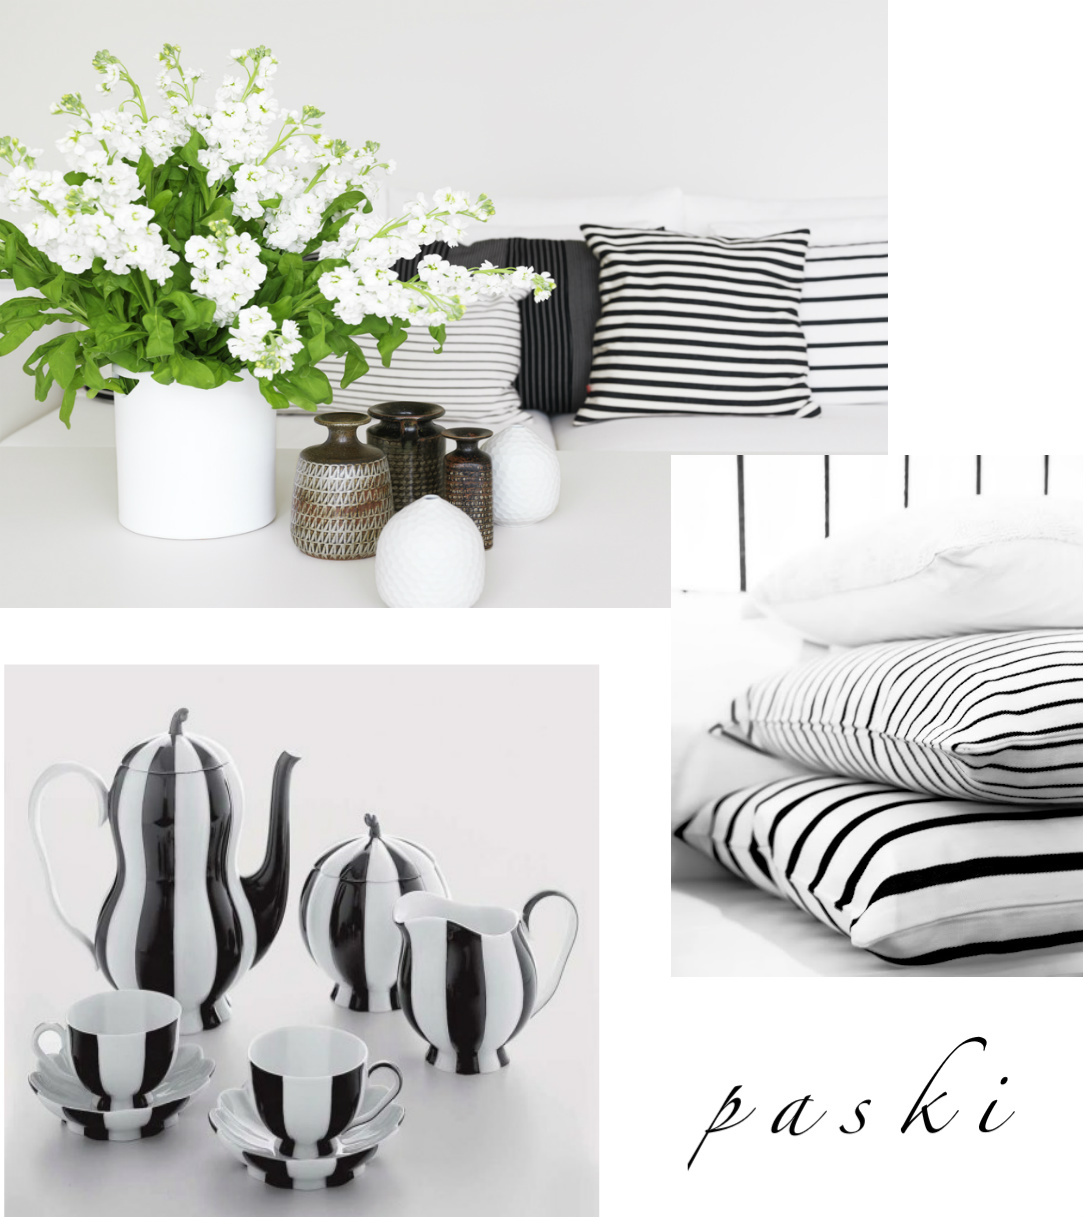 tkaninyw paski czarno-białe,poduszki w paski,dekoracje w paski,dodatki do domu w paski